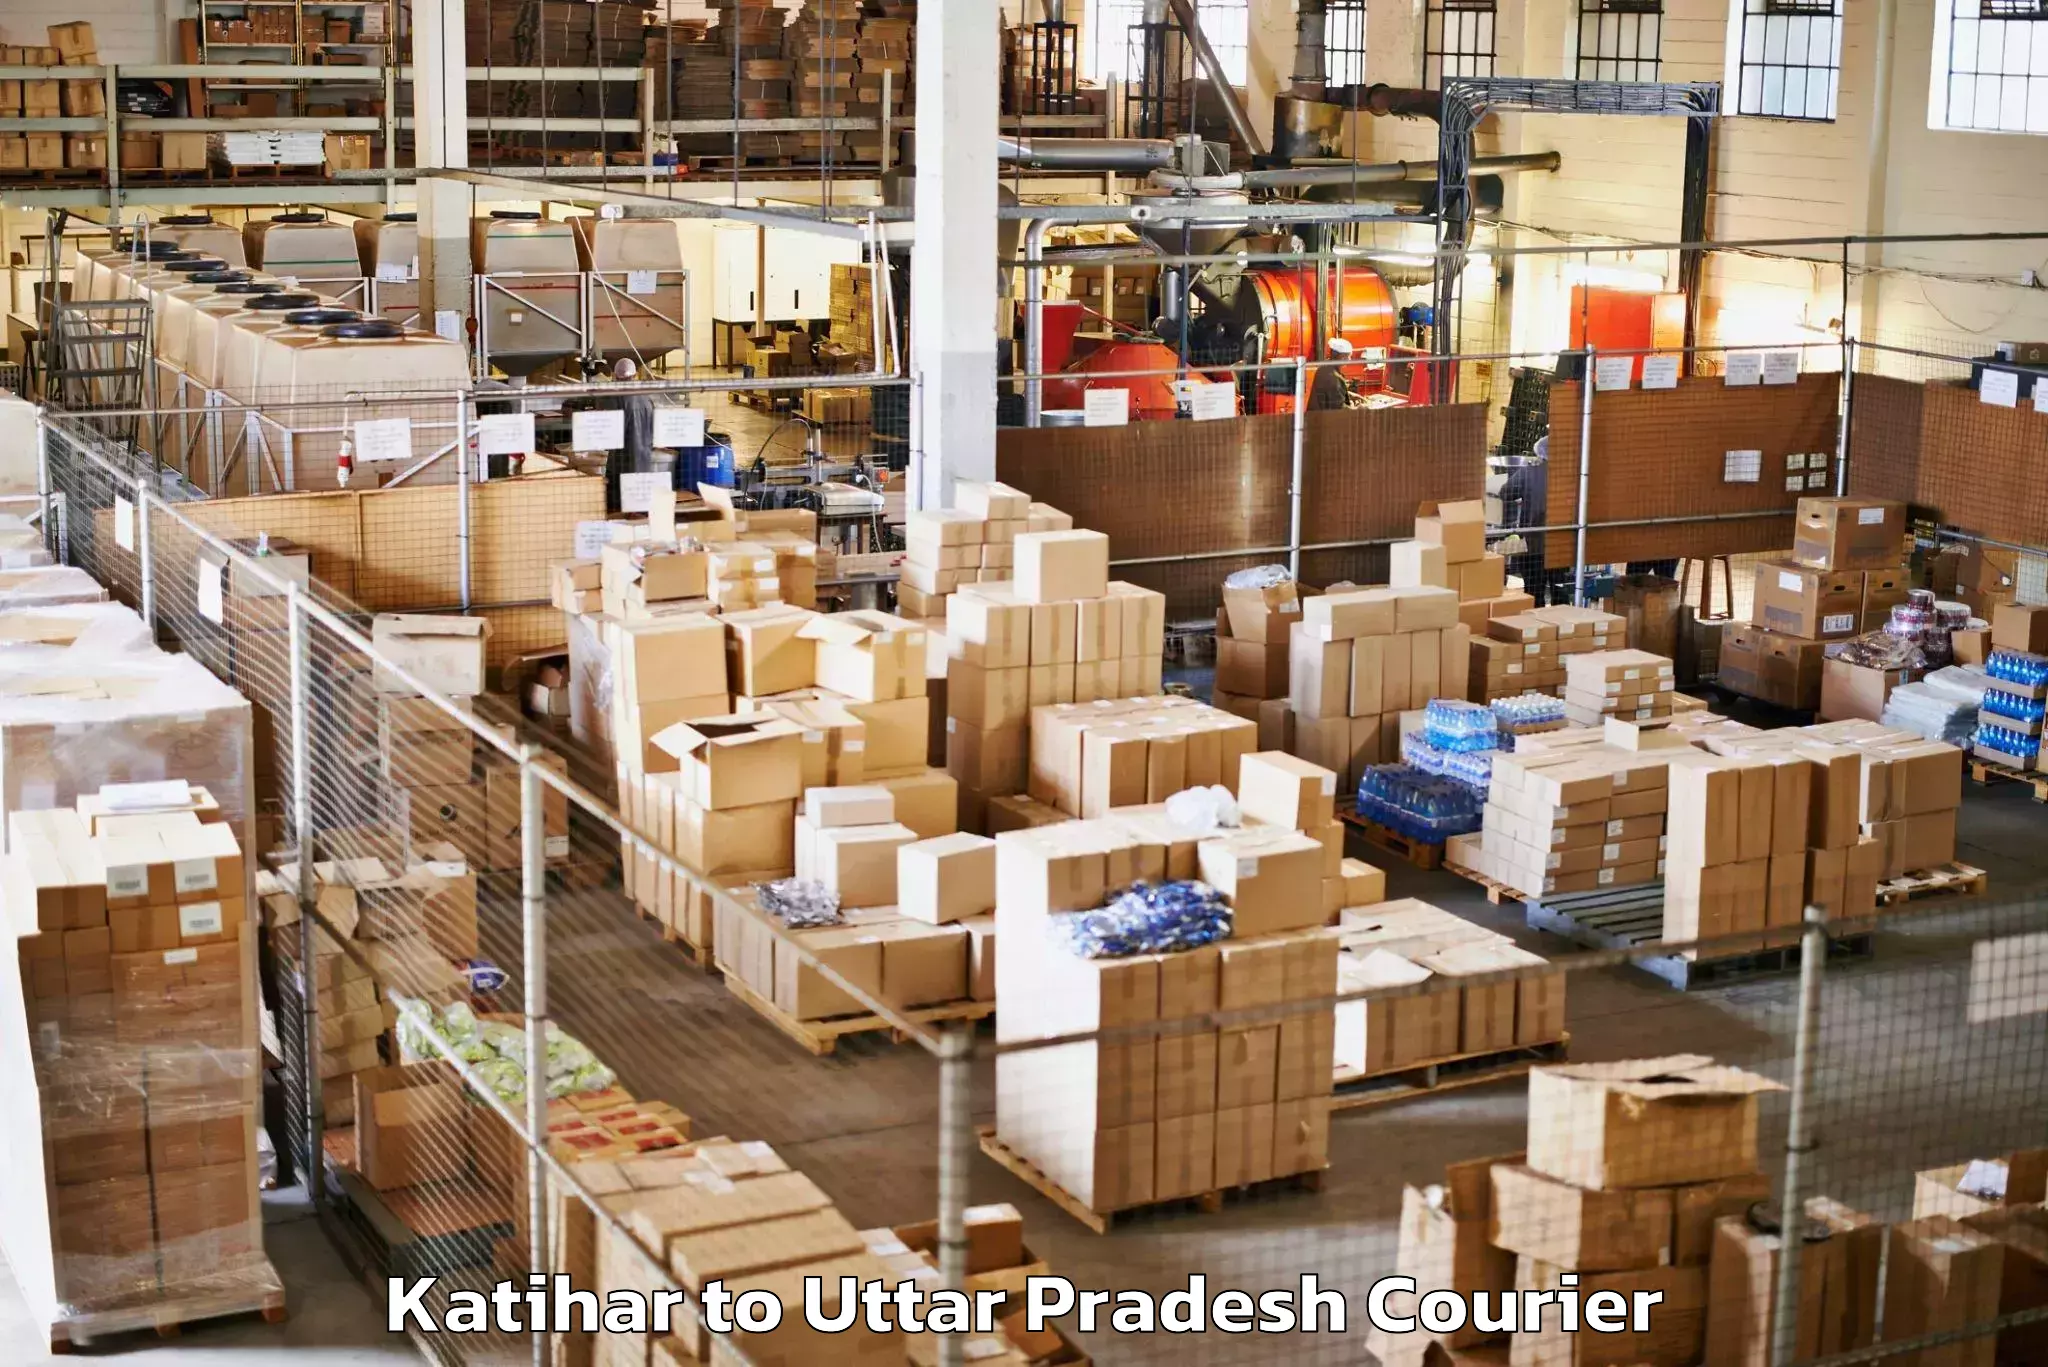 Baggage shipping schedule Katihar to Uttar Pradesh